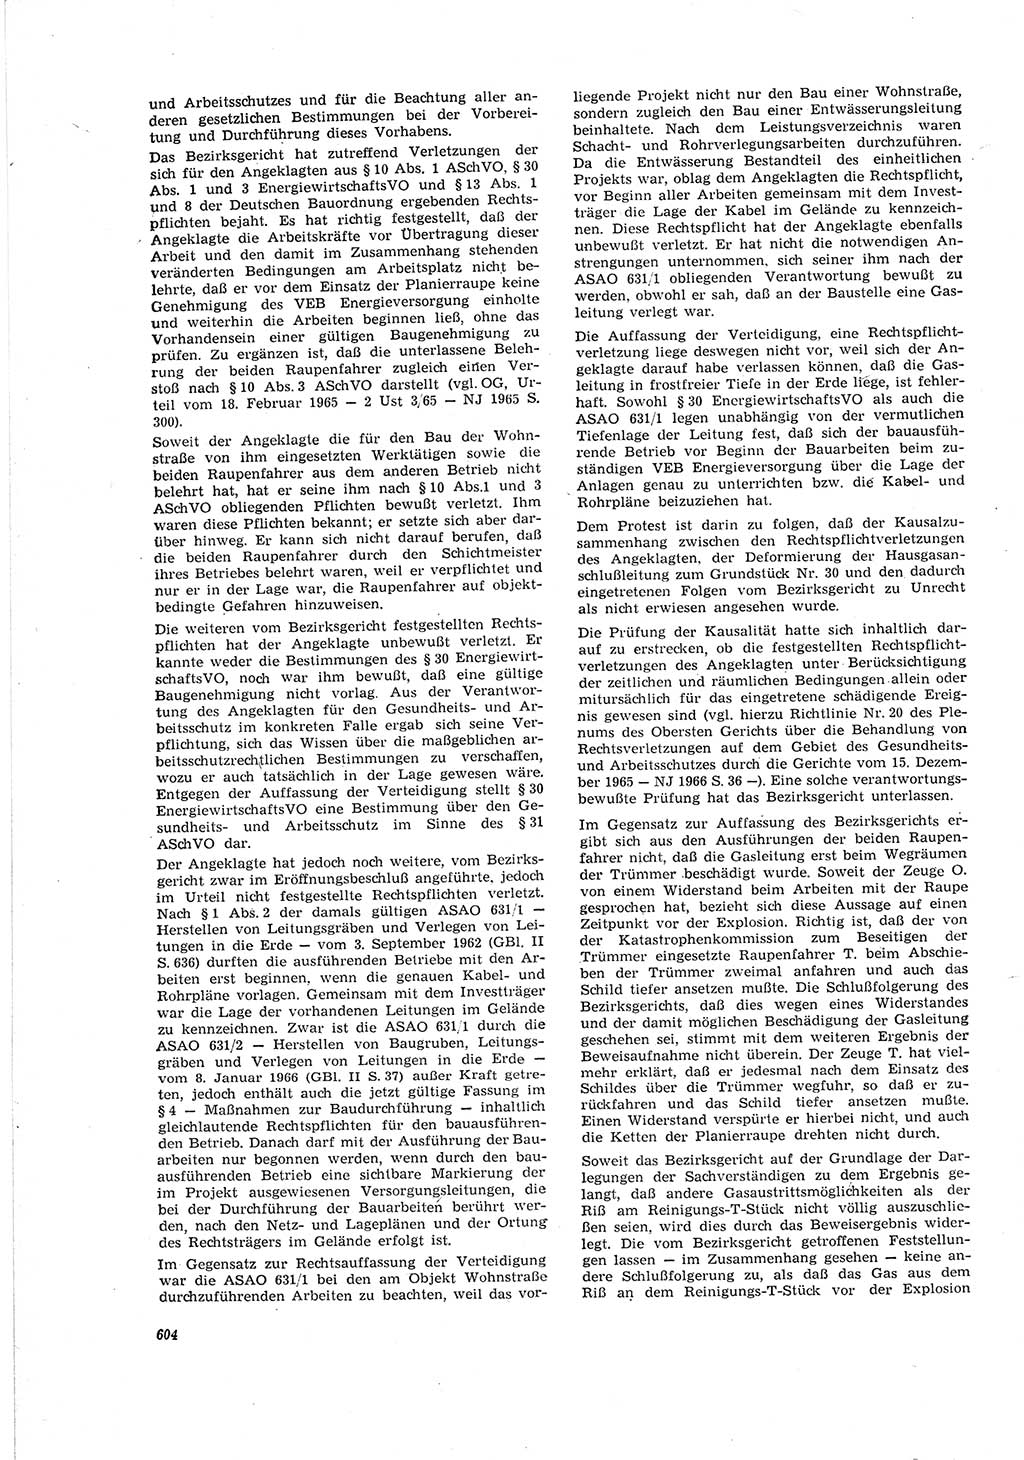 Neue Justiz (NJ), Zeitschrift für Recht und Rechtswissenschaft [Deutsche Demokratische Republik (DDR)], 20. Jahrgang 1966, Seite 604 (NJ DDR 1966, S. 604)